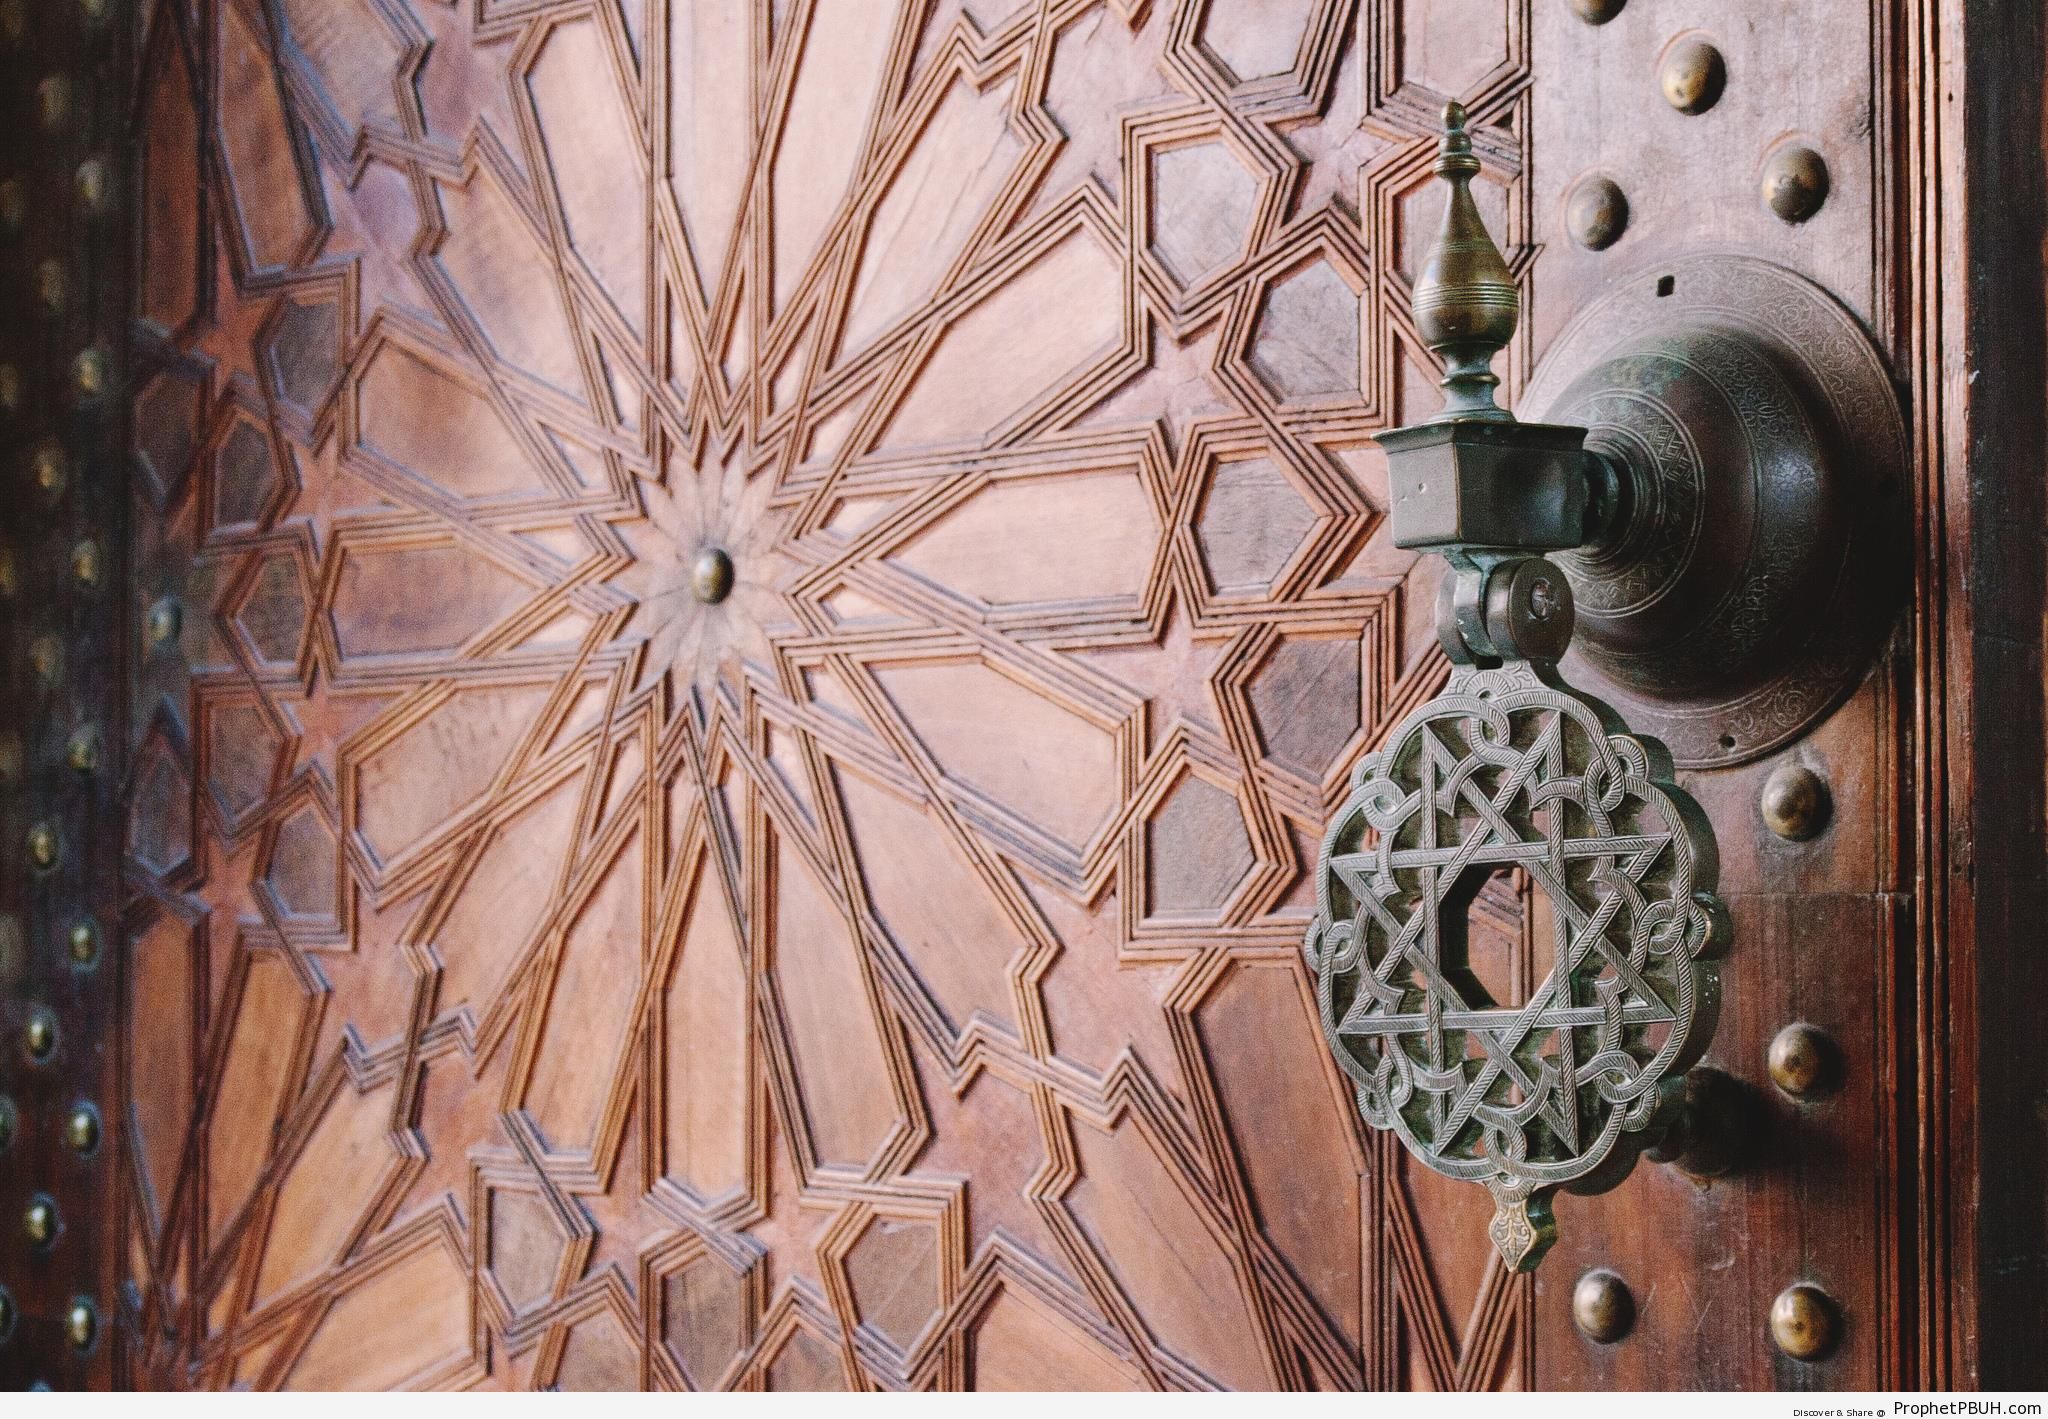 Arabesque (Islamic Decoration) on Door at Paris Great Mosque - Doors -Picture